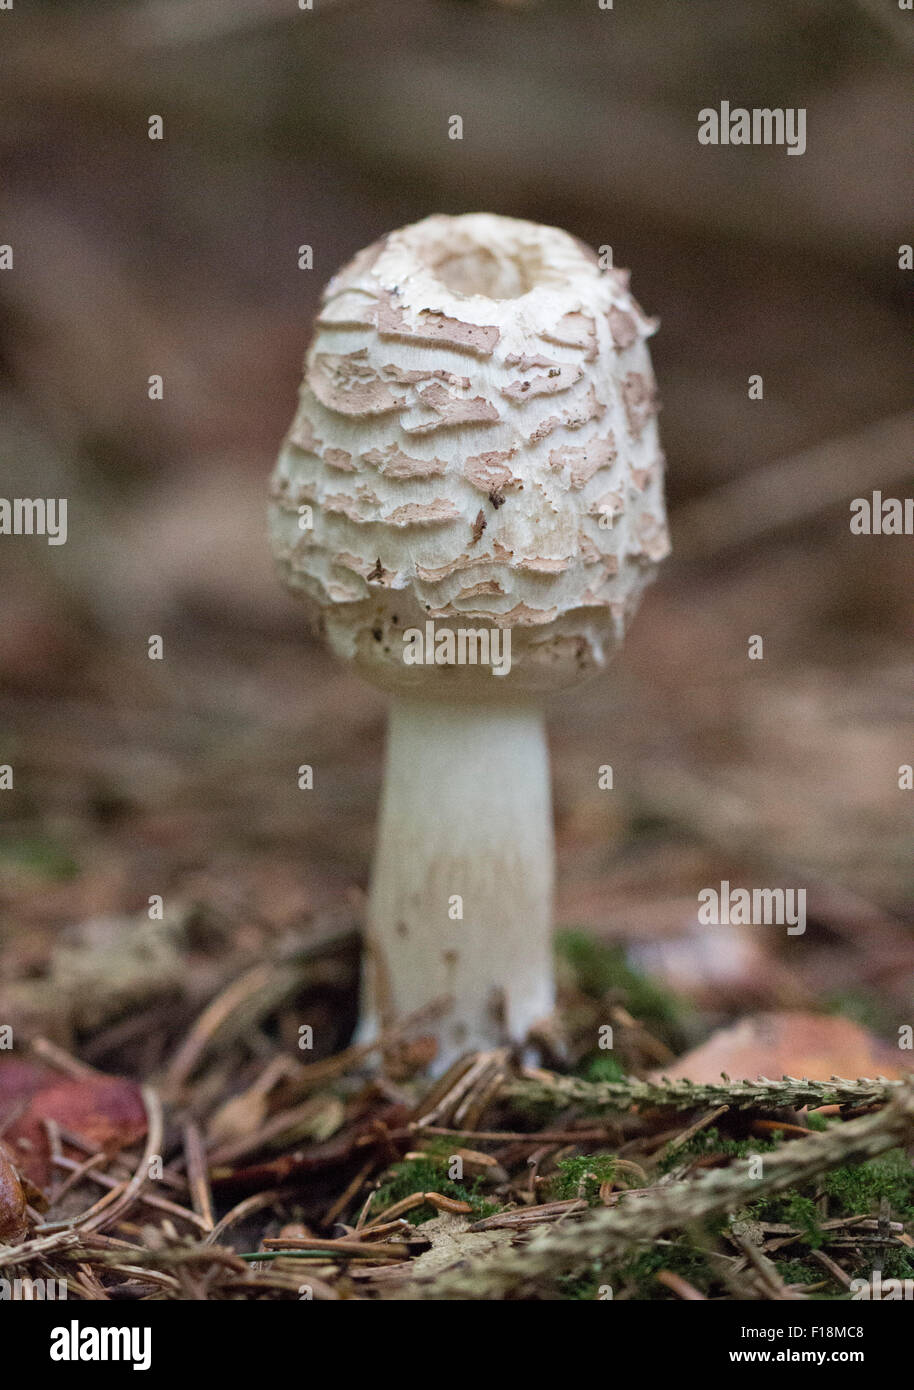 shaggy parasol mushroom Stock Photo